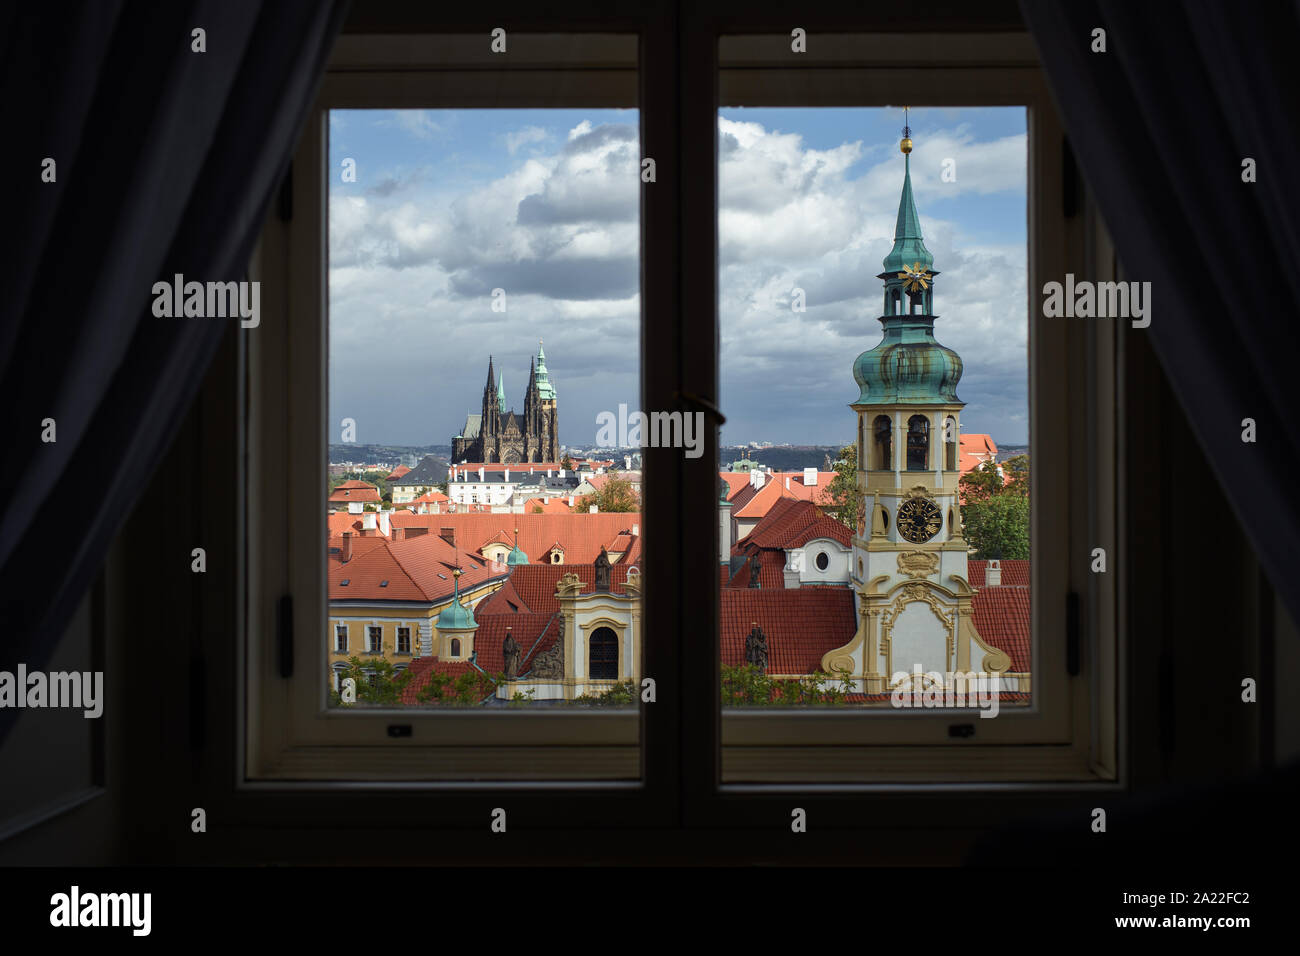 Il 30 settembre 2019, Cechia, Prag: vista da una finestra della residenza ufficiale del Ministro degli Affari esteri della Repubblica ceca sui tetti della capitale Praga. Foto: Gregor Fischer/dpa Foto Stock